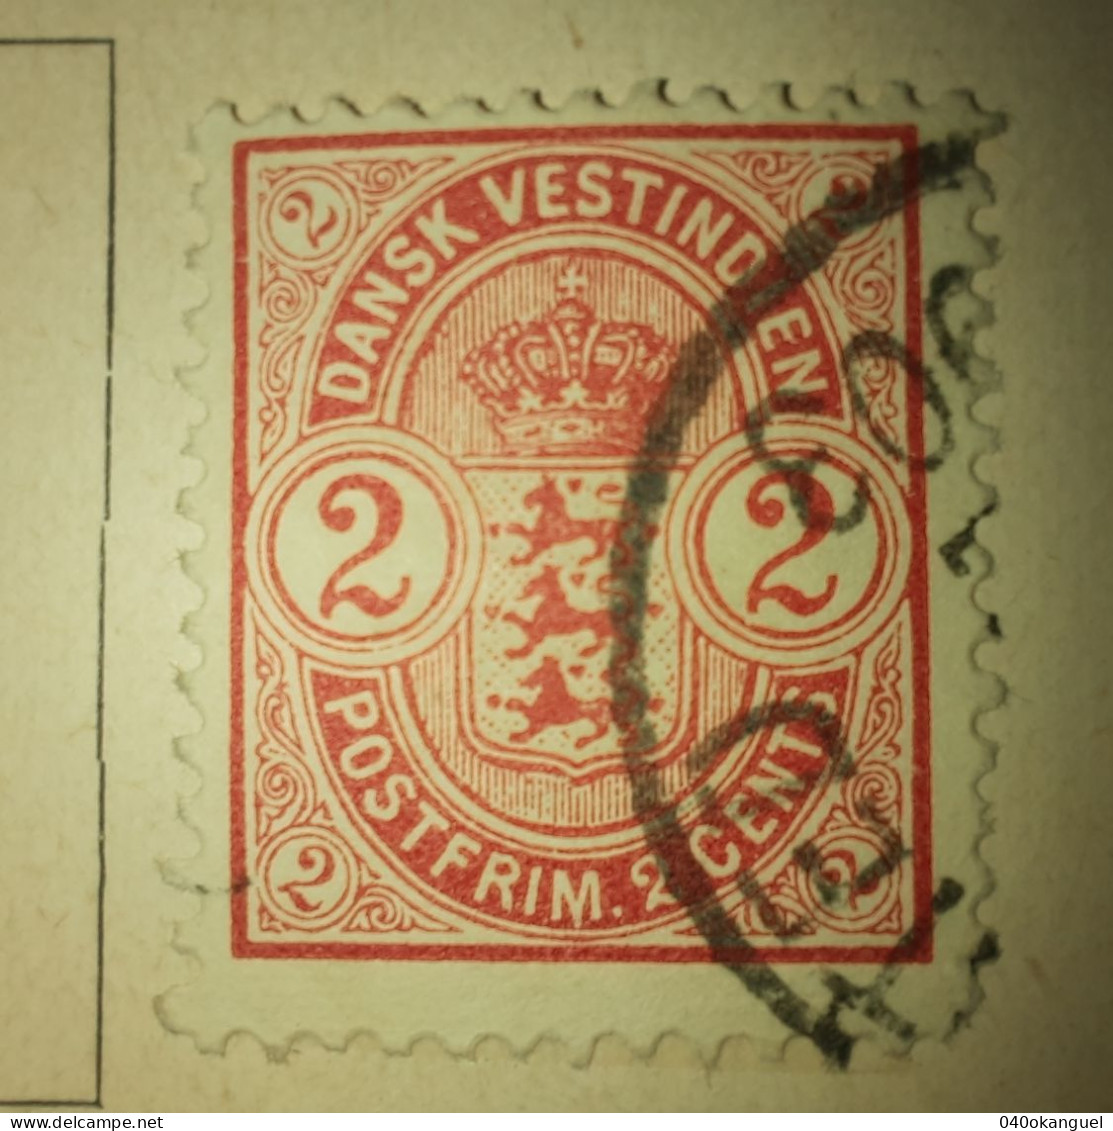 Westindien - Antillen - 1 Marke Von 1900  Gem. Scan - Denmark (West Indies)